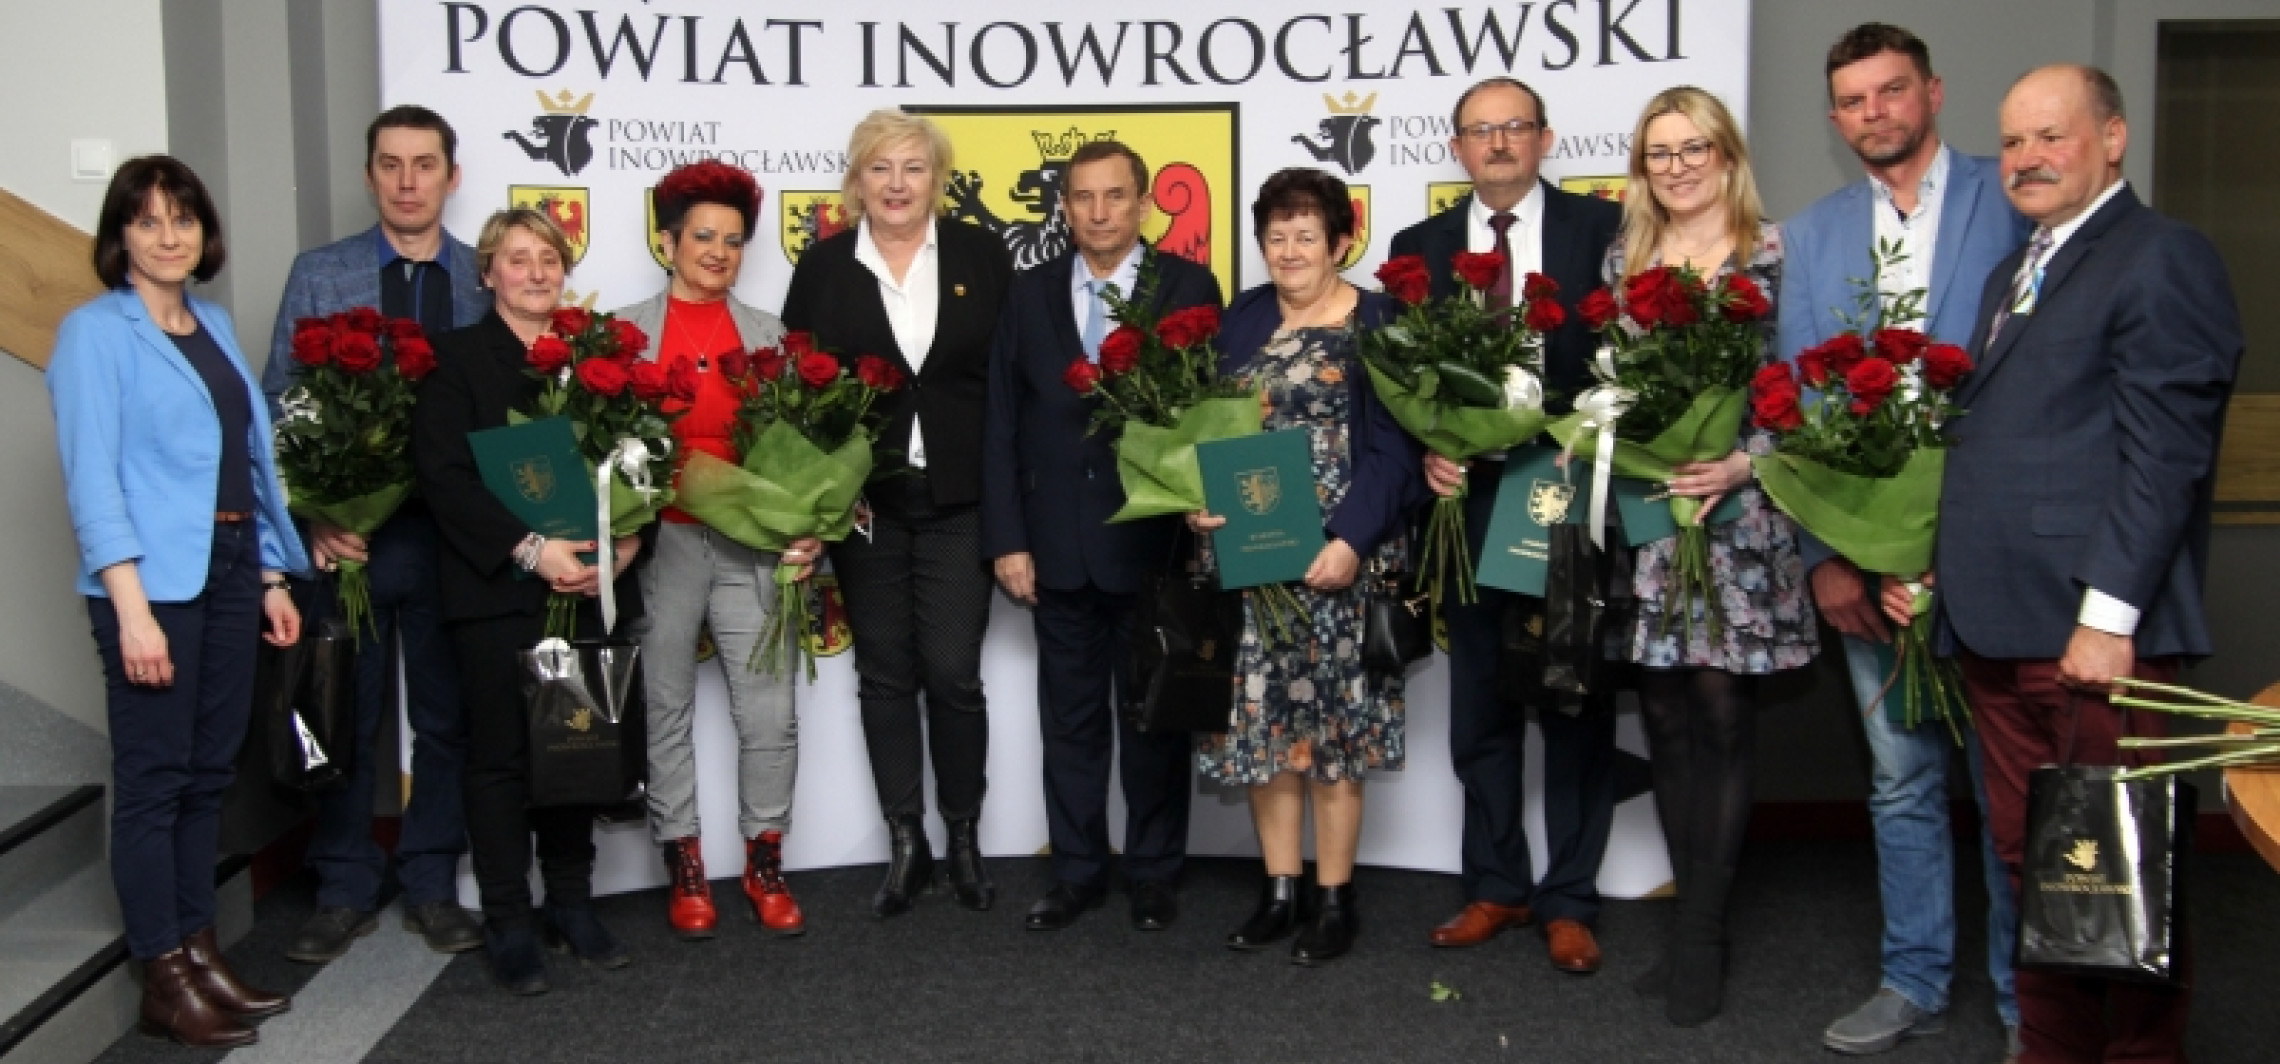 Inowrocław - Sołtysi świętowali swój dzień